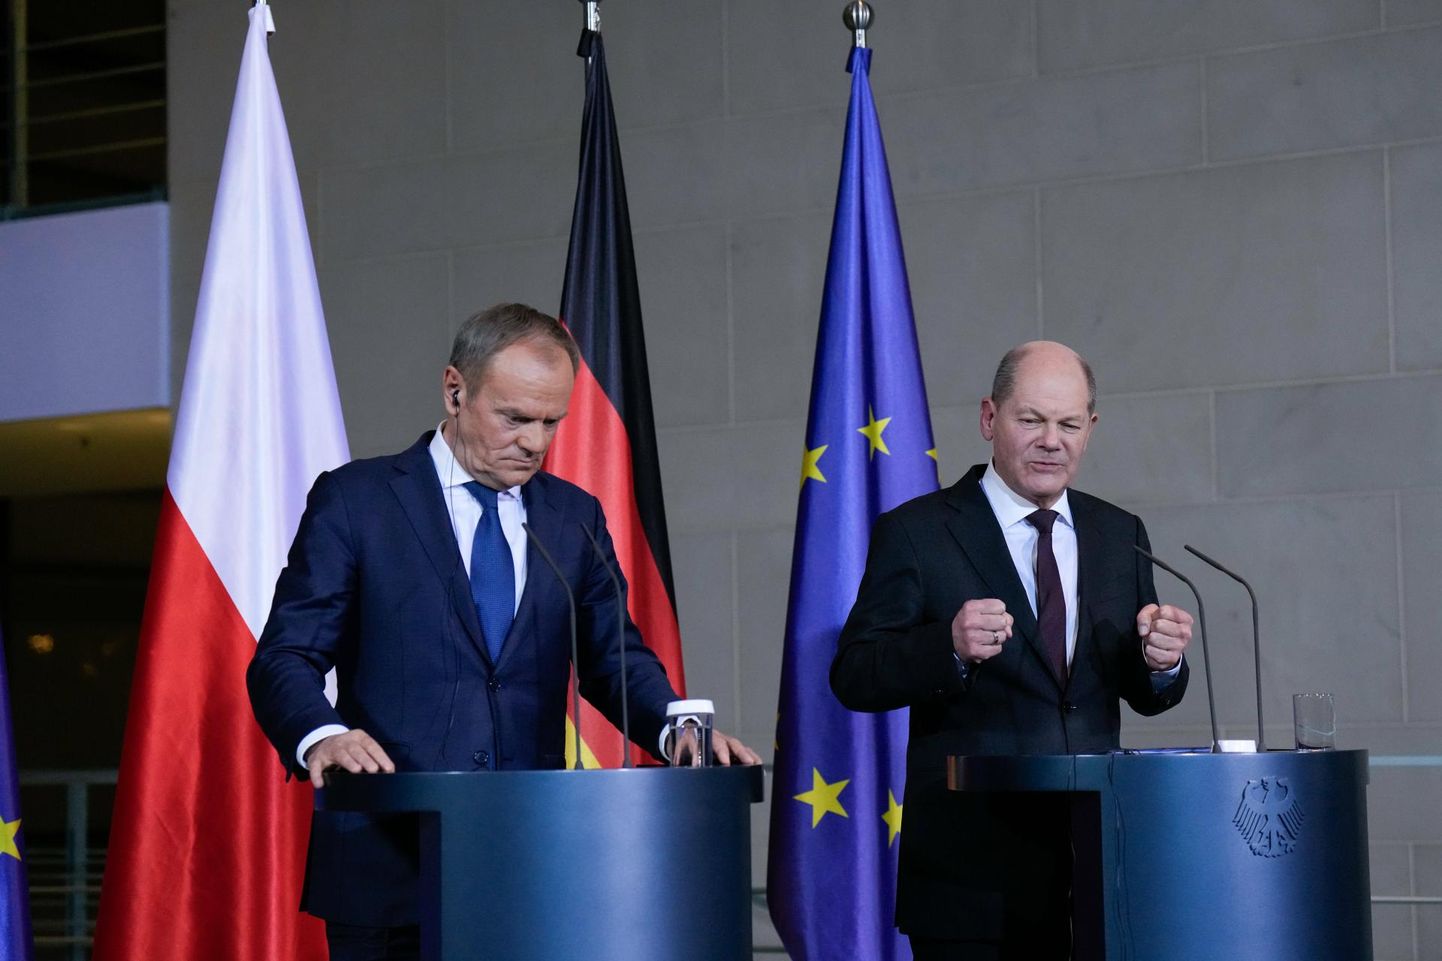 Poola peaminister Donald Tusk (vasakul) võttis initsiatiivi, et taaselustada Poola, Saksa ja Prantsuse nn Weimari kolmik. Saksa kantsler Olaf Scholz tervitas kolmikliidu initsiatiivi.